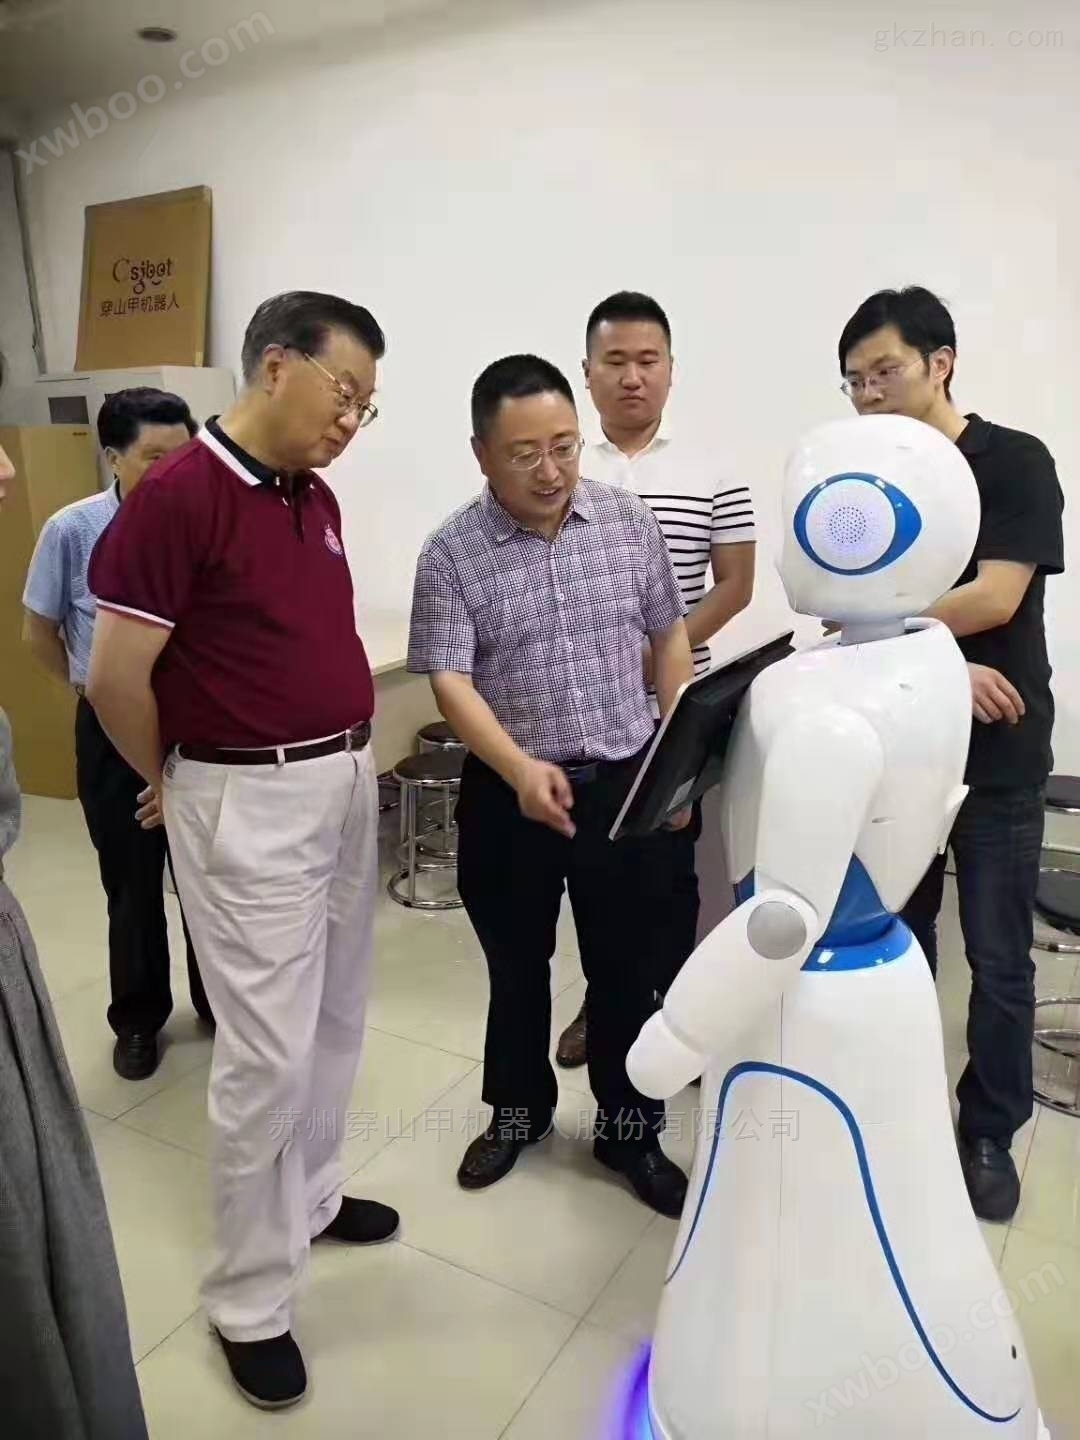 四川大学人工智能实验室教育迎宾机器人